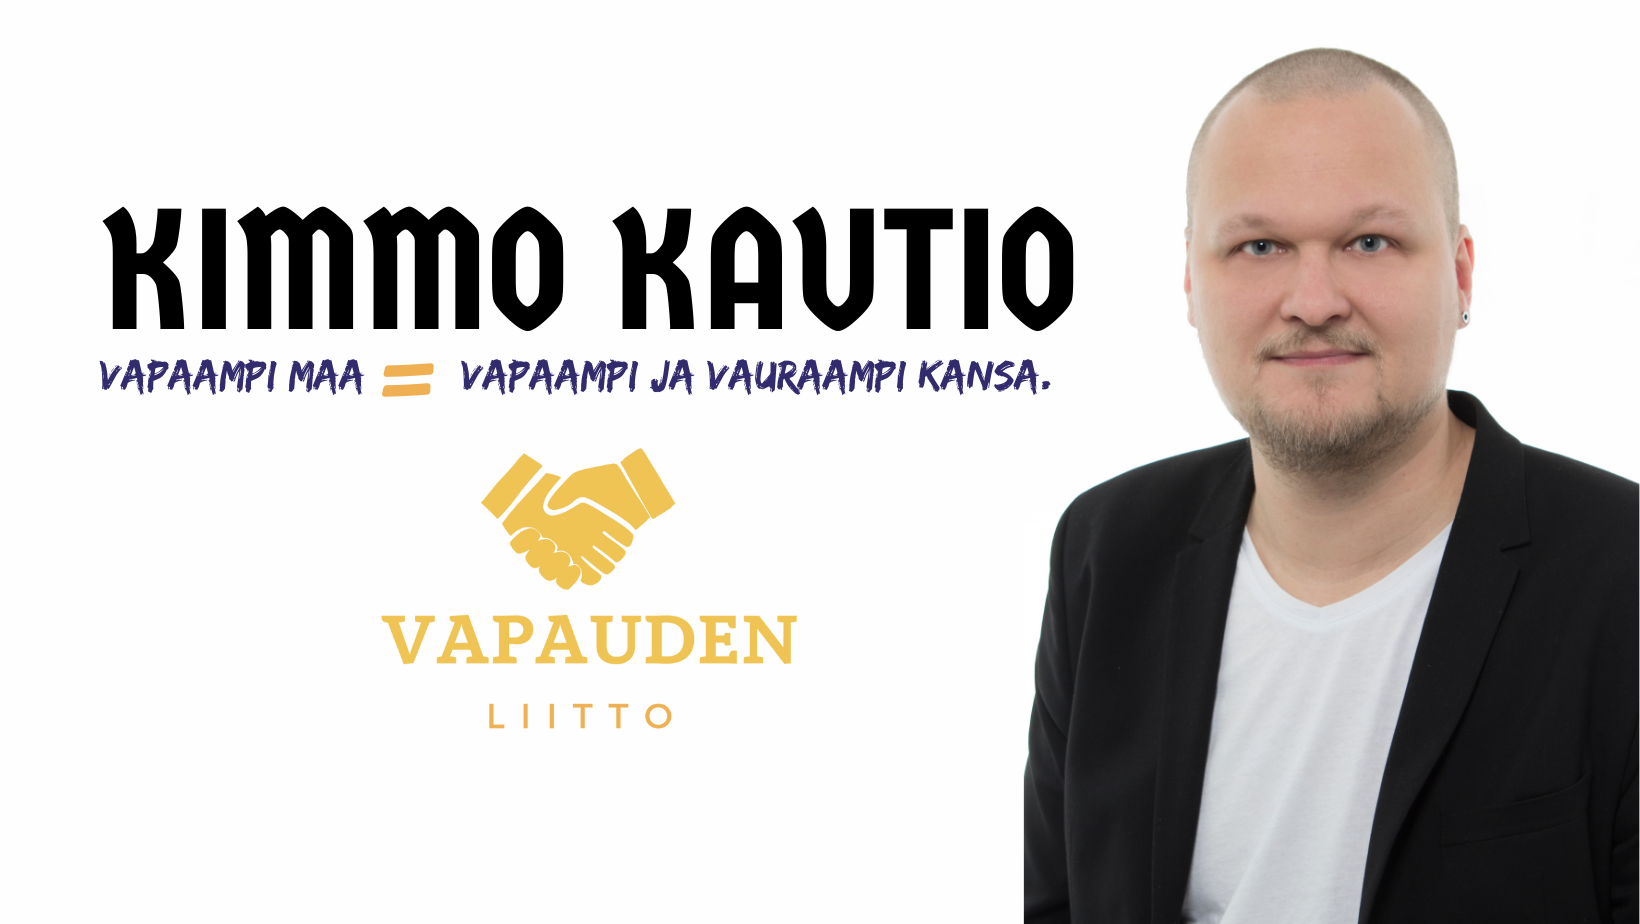 Kimmo Kautio